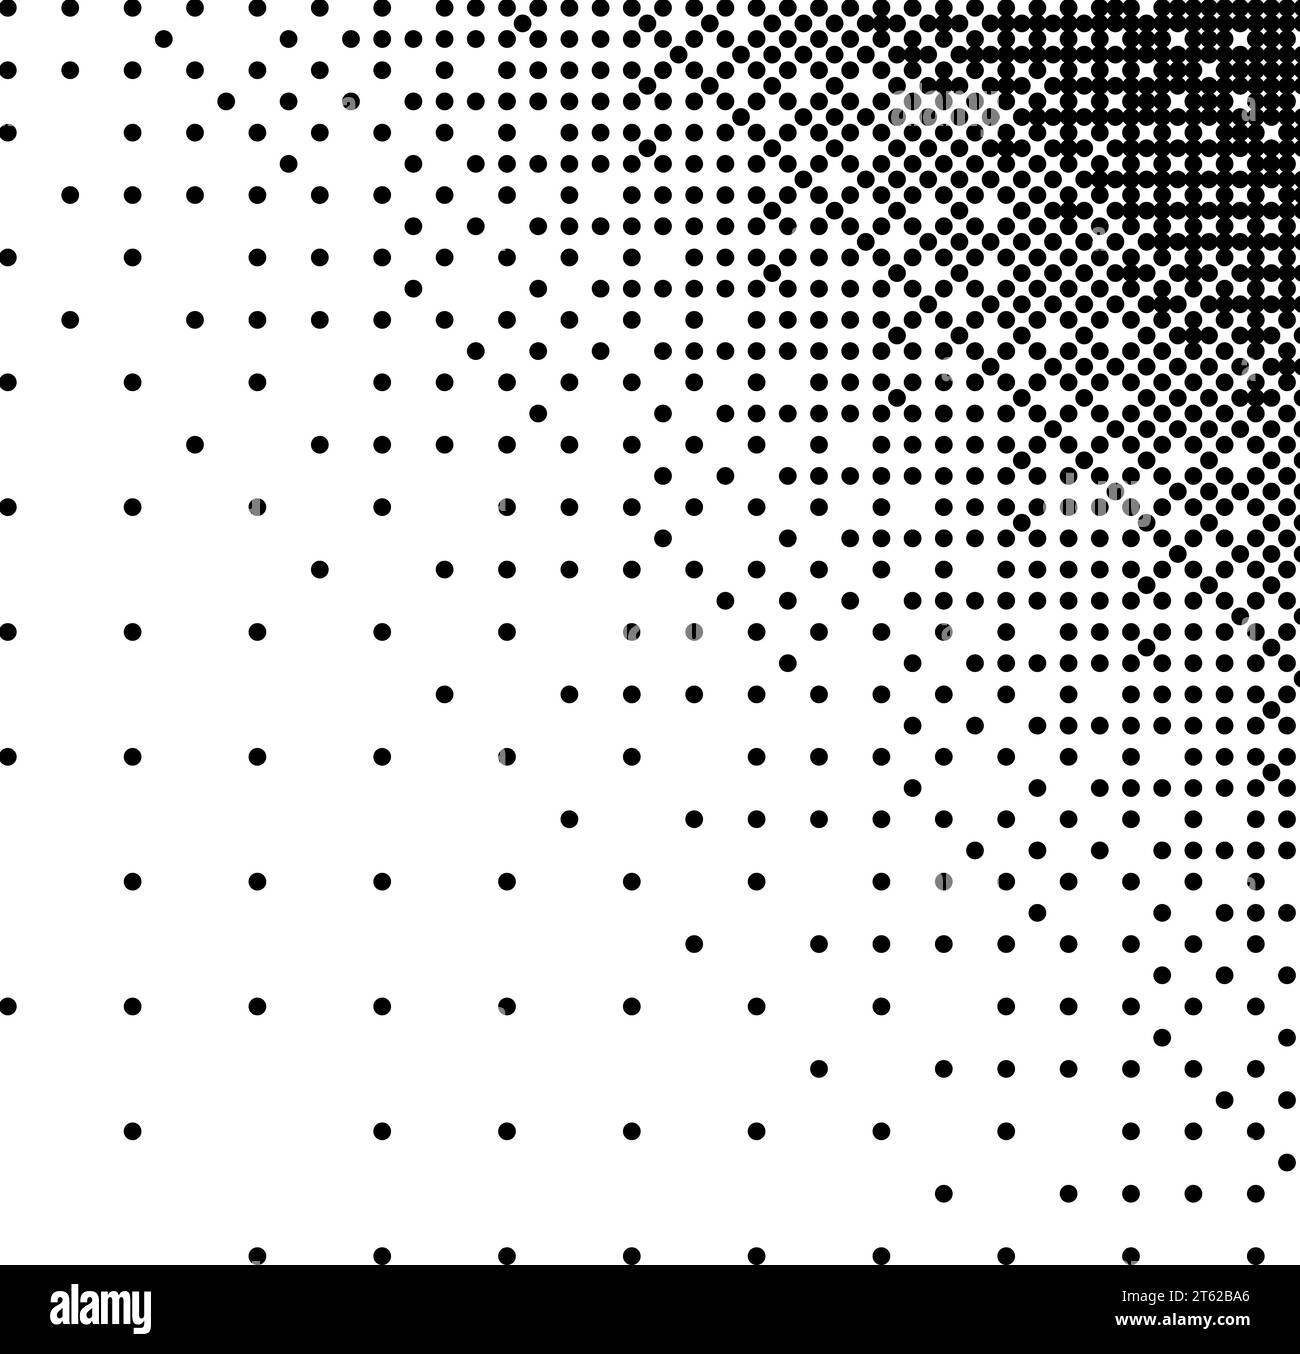 Coin d'écran avec dégradé de trame demi-ton noir de petits points sur fond blanc. Vignette rétro vectorielle pour bandes dessinées et manga Illustration de Vecteur